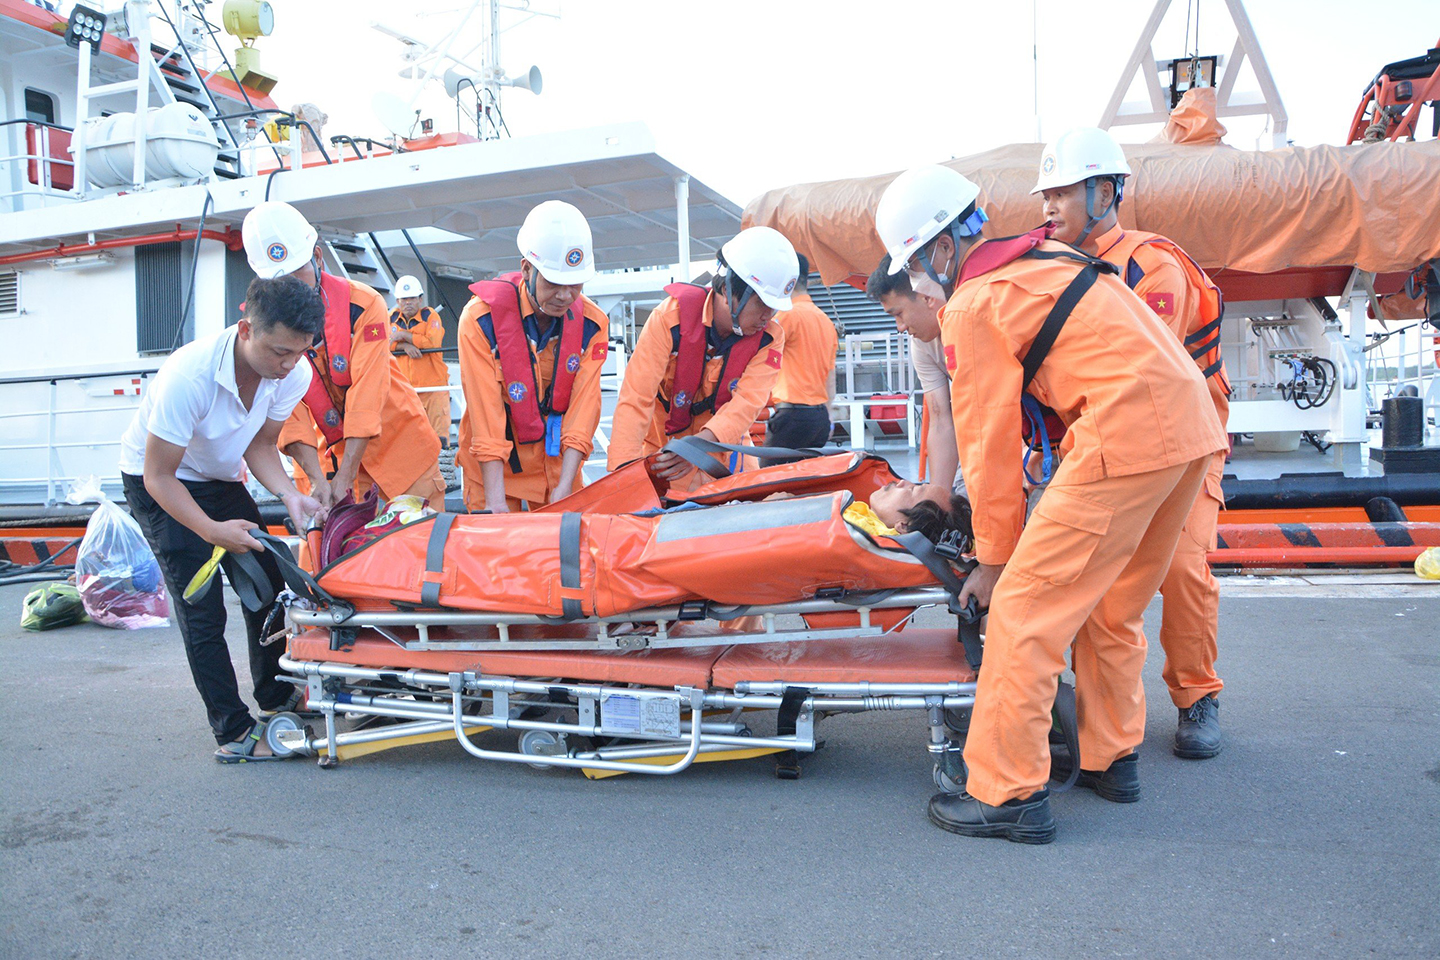 Các thuyền viên cứu nạn hàng hải của Trung tâm Phối hợp Tìm kiếm Cứu nạn Hàng hải khu vực III cứu nạn và đưa về bờ một thuyền viên bị nạn trên biển.